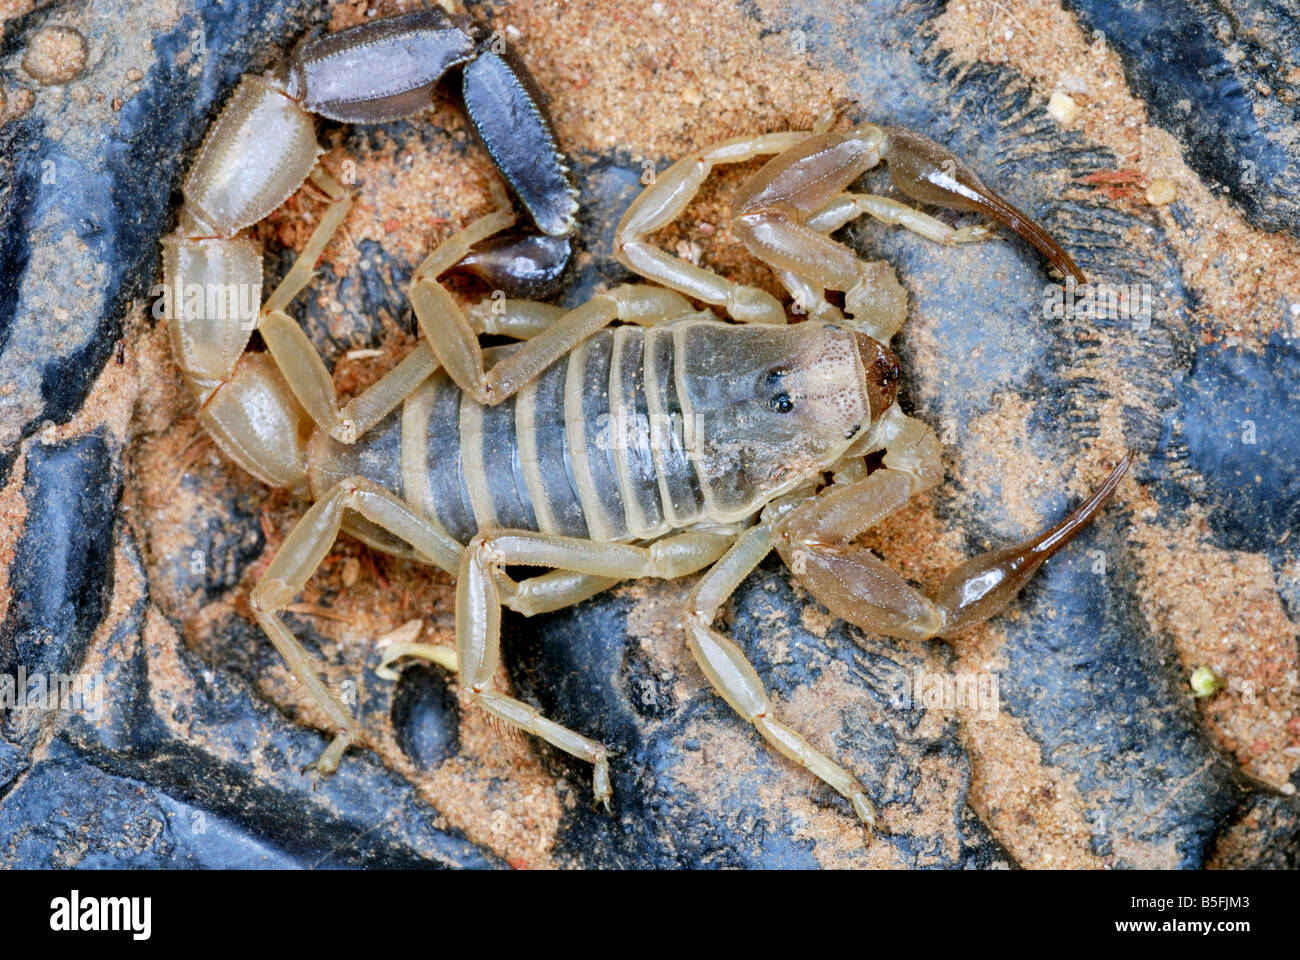 Androctonus finitimus Famille BUTHIDAE une espèce de scorpion. Strictement limités aux zones désertiques. venom hautement toxiques. Banque D'Images